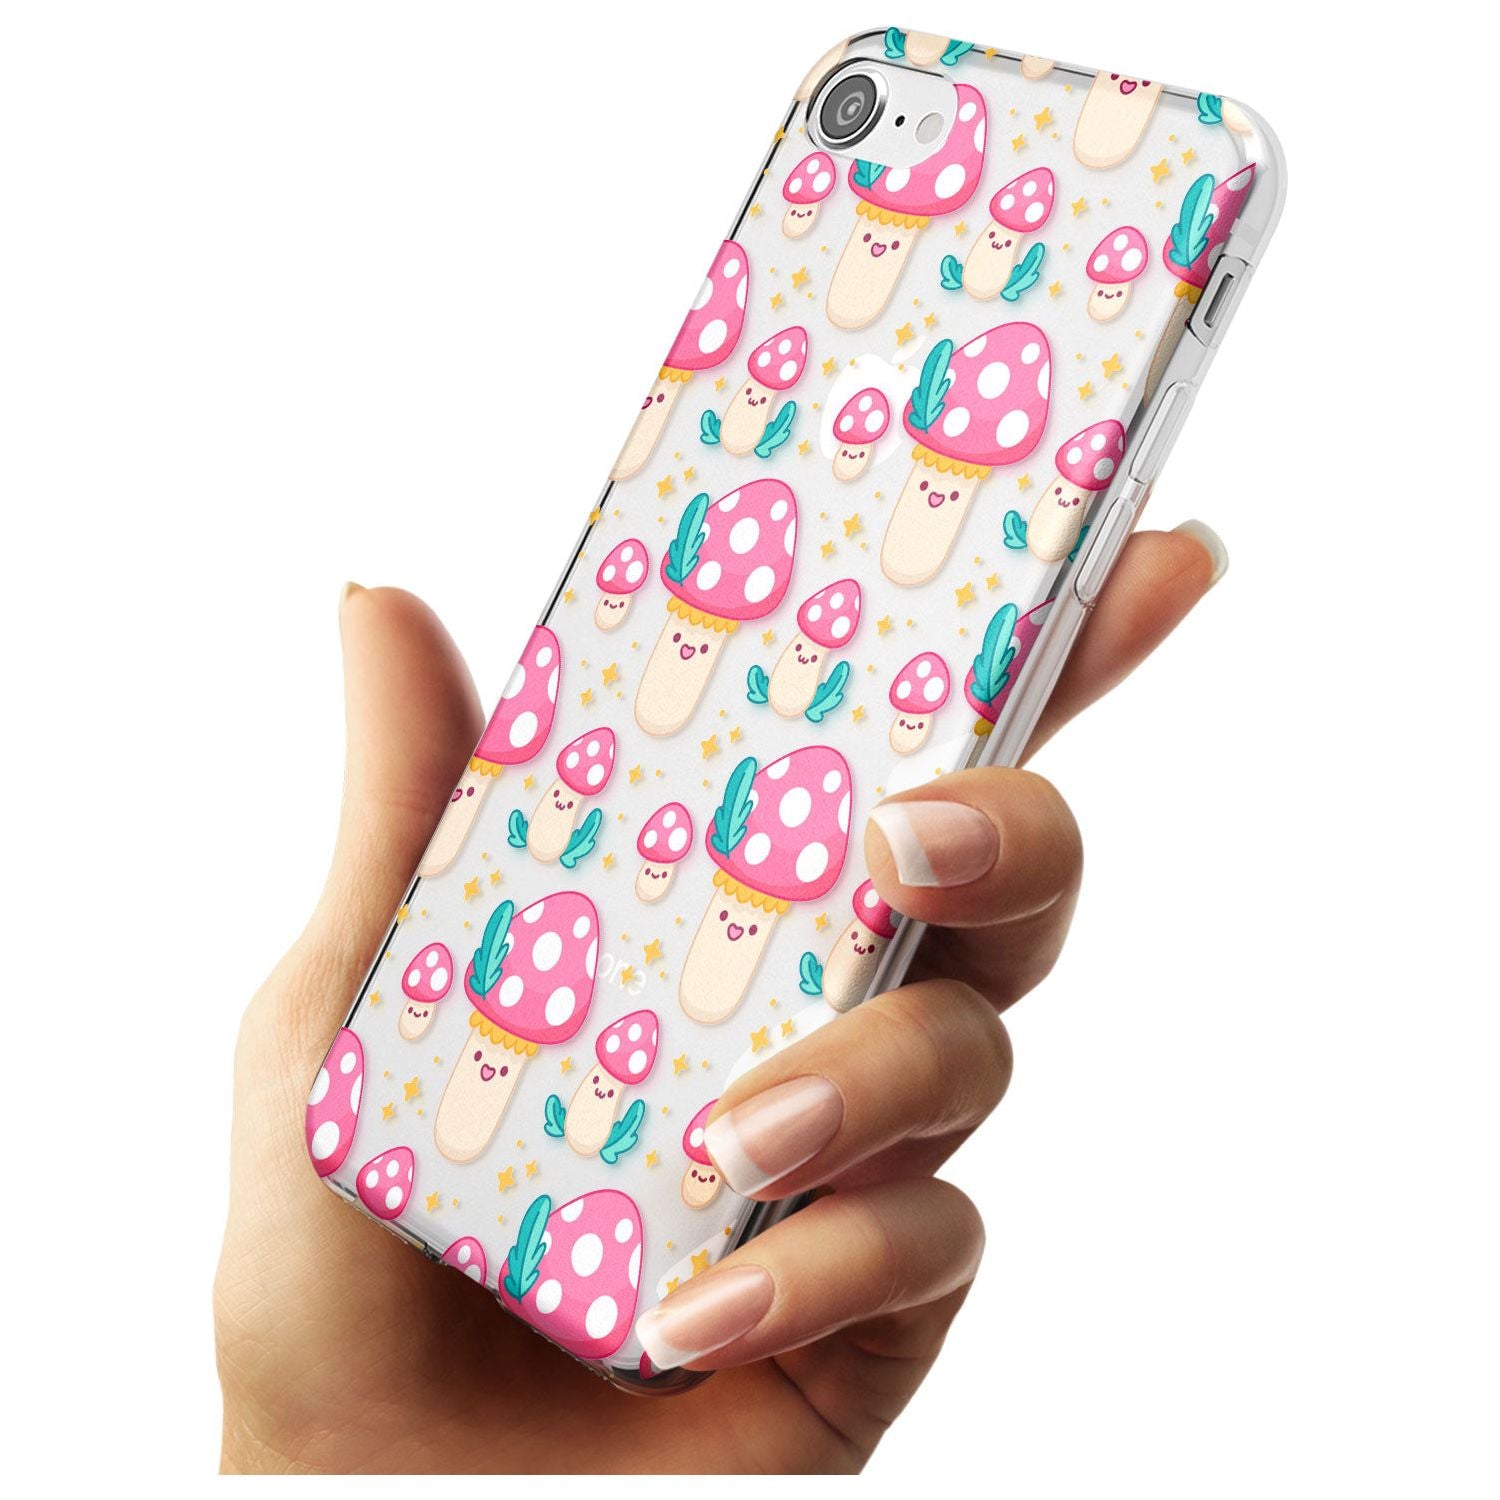 Cute Mushrooms Pattern Slim TPU Phone Case for iPhone SE 8 7 Plus